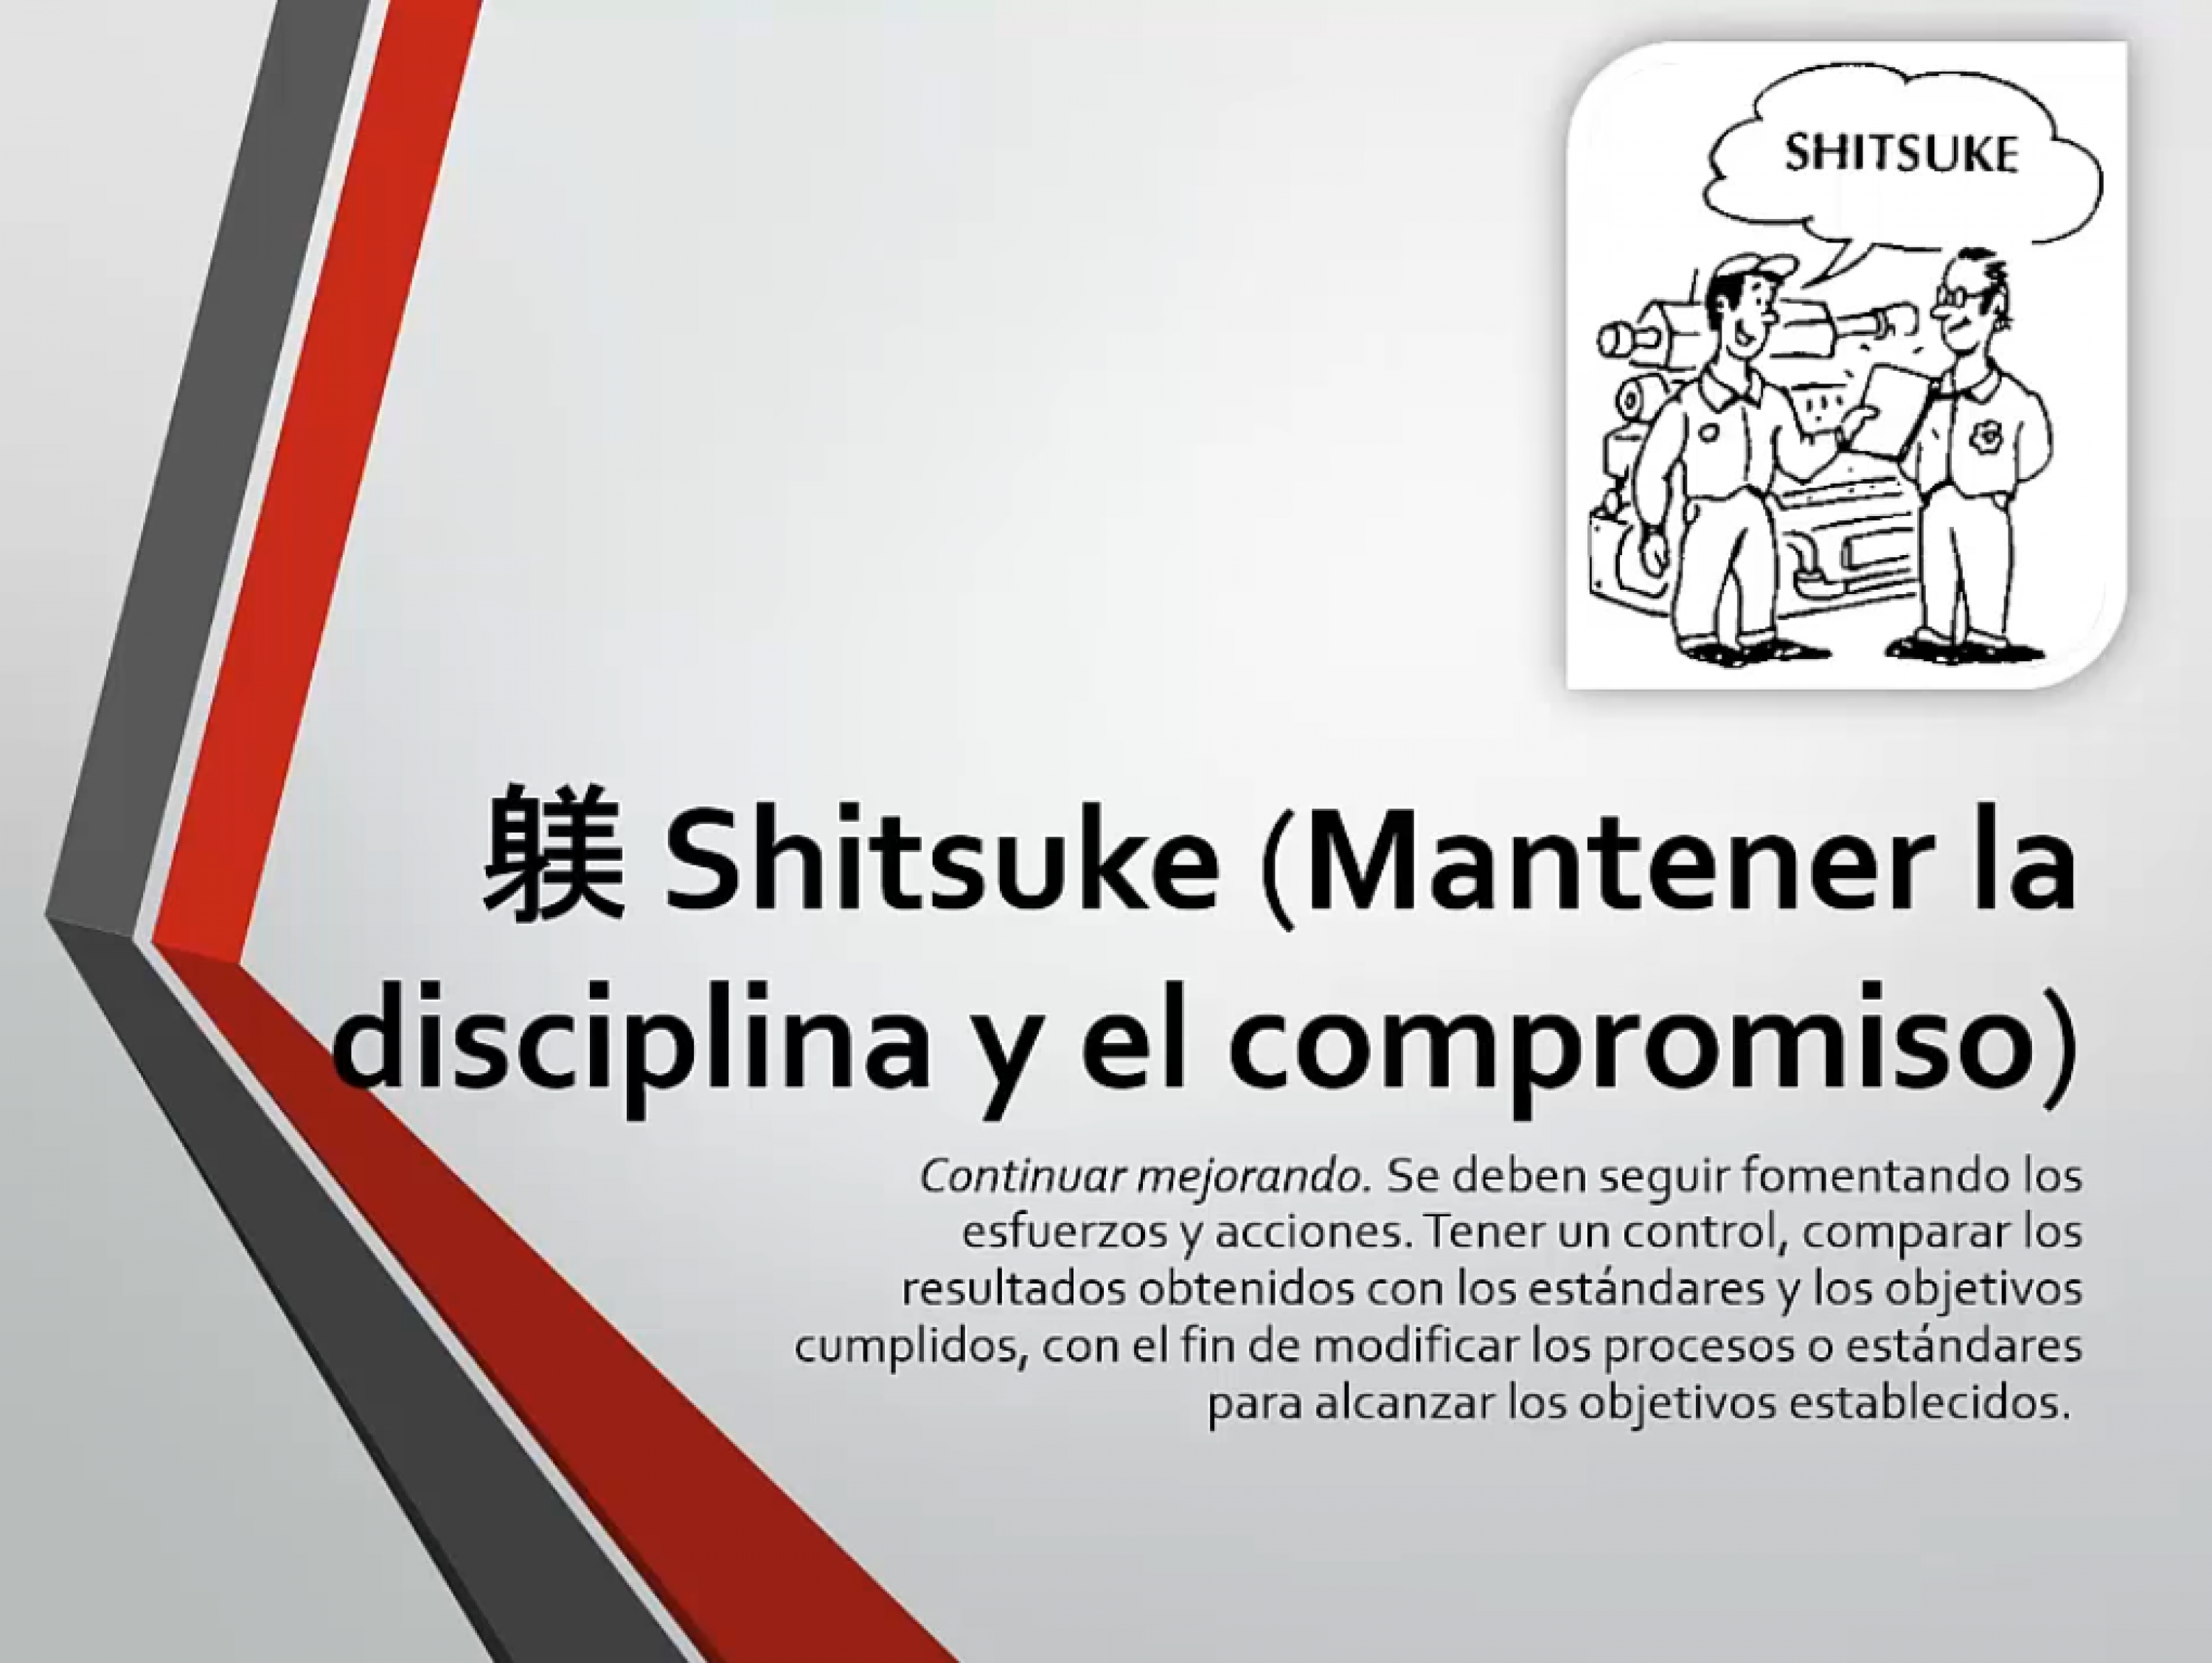 Shitsuke (Mantener la disciplina y el compromiso)